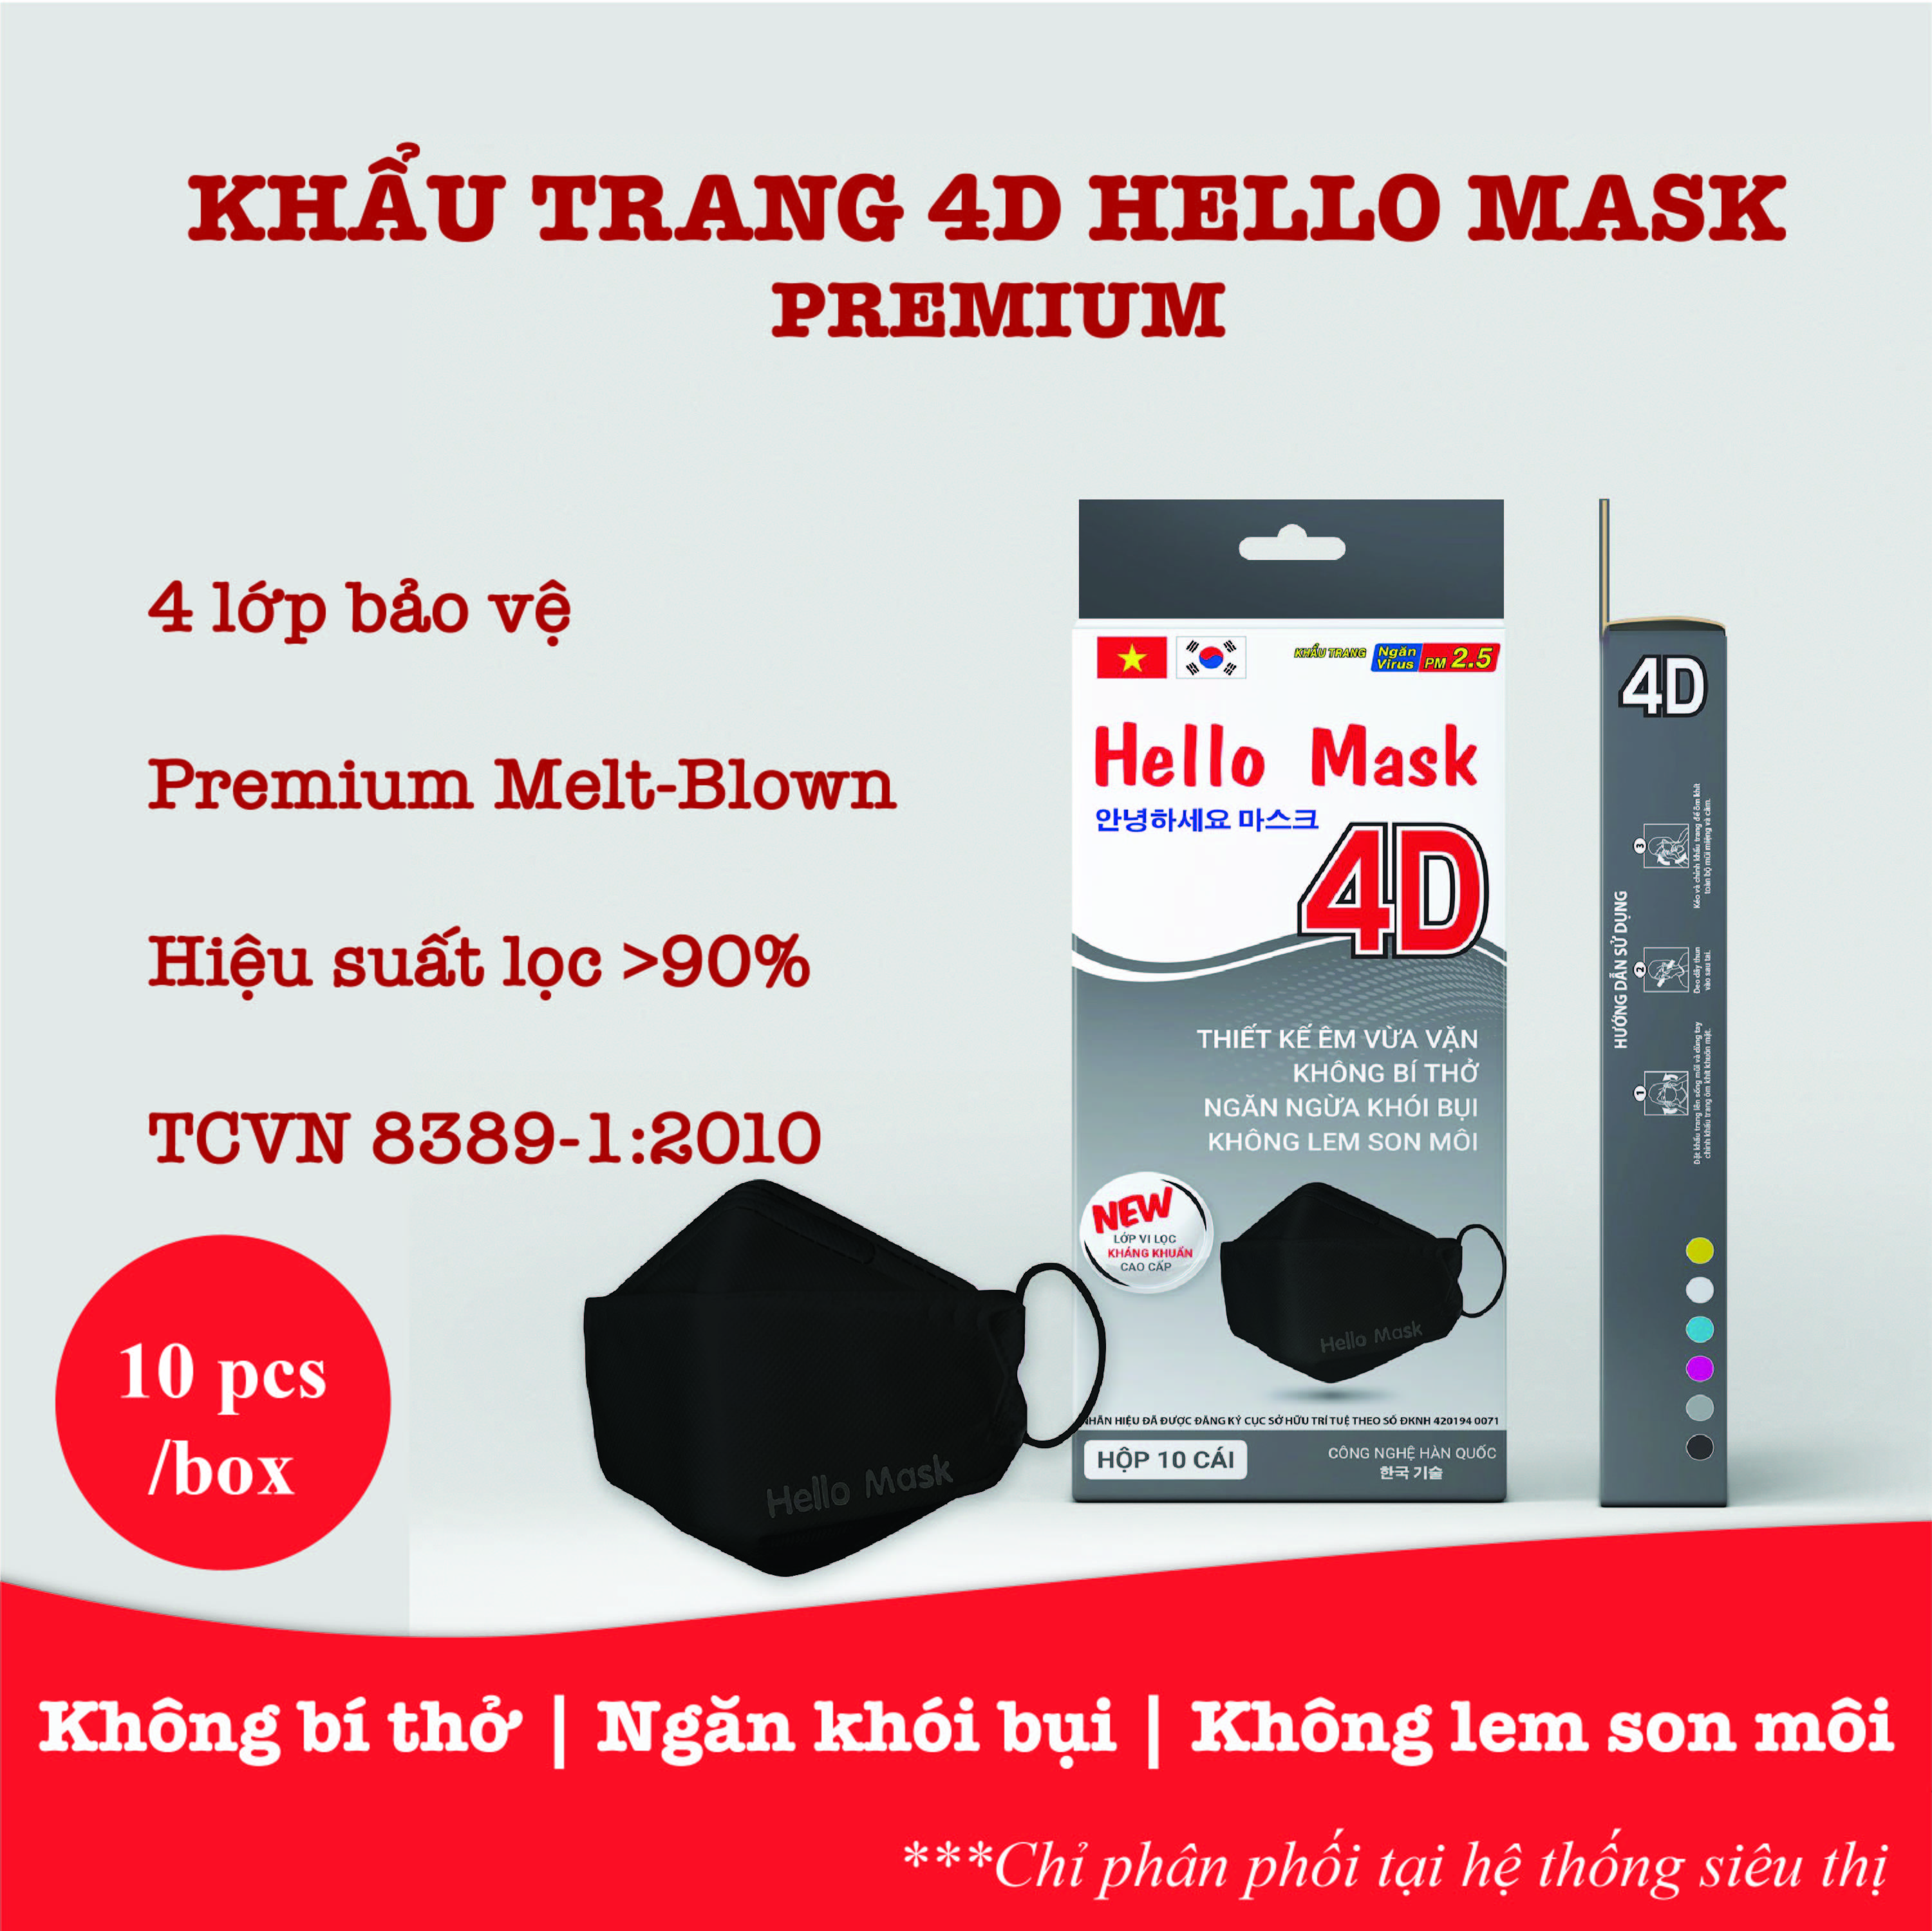 khẩu trang 4D Hello Mask - Màu Đen - Hộp 10 cái